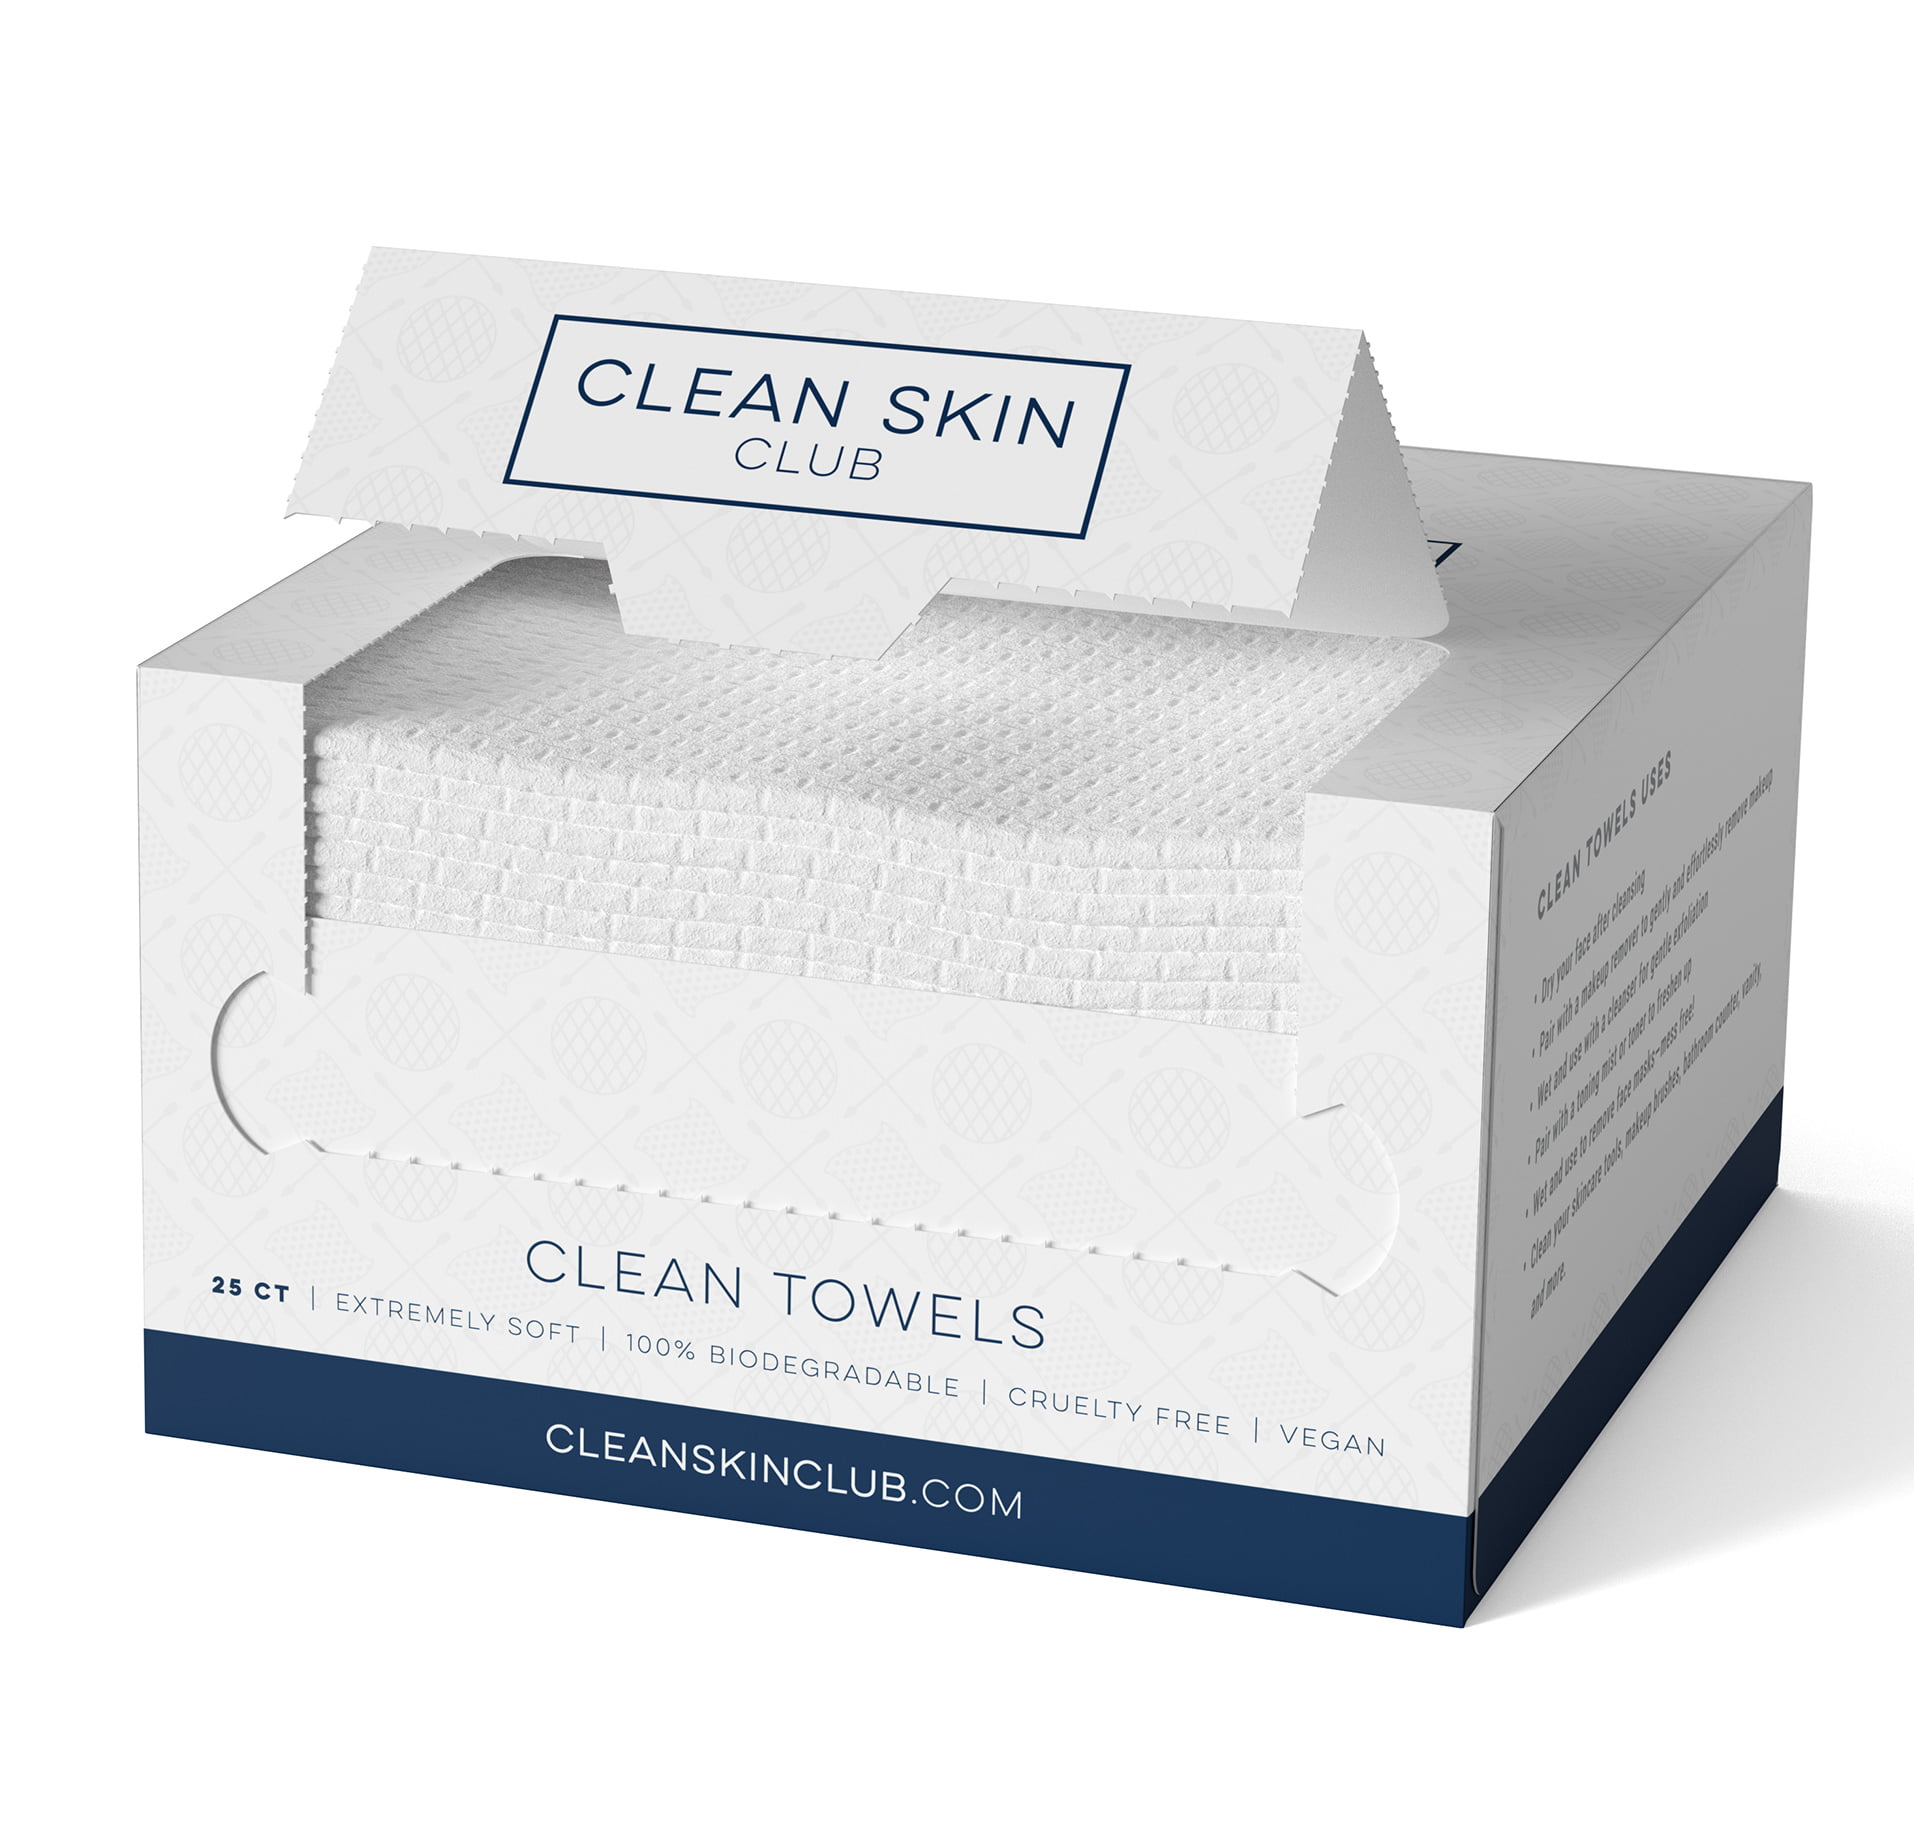  Clean Skin Club Toallas limpias